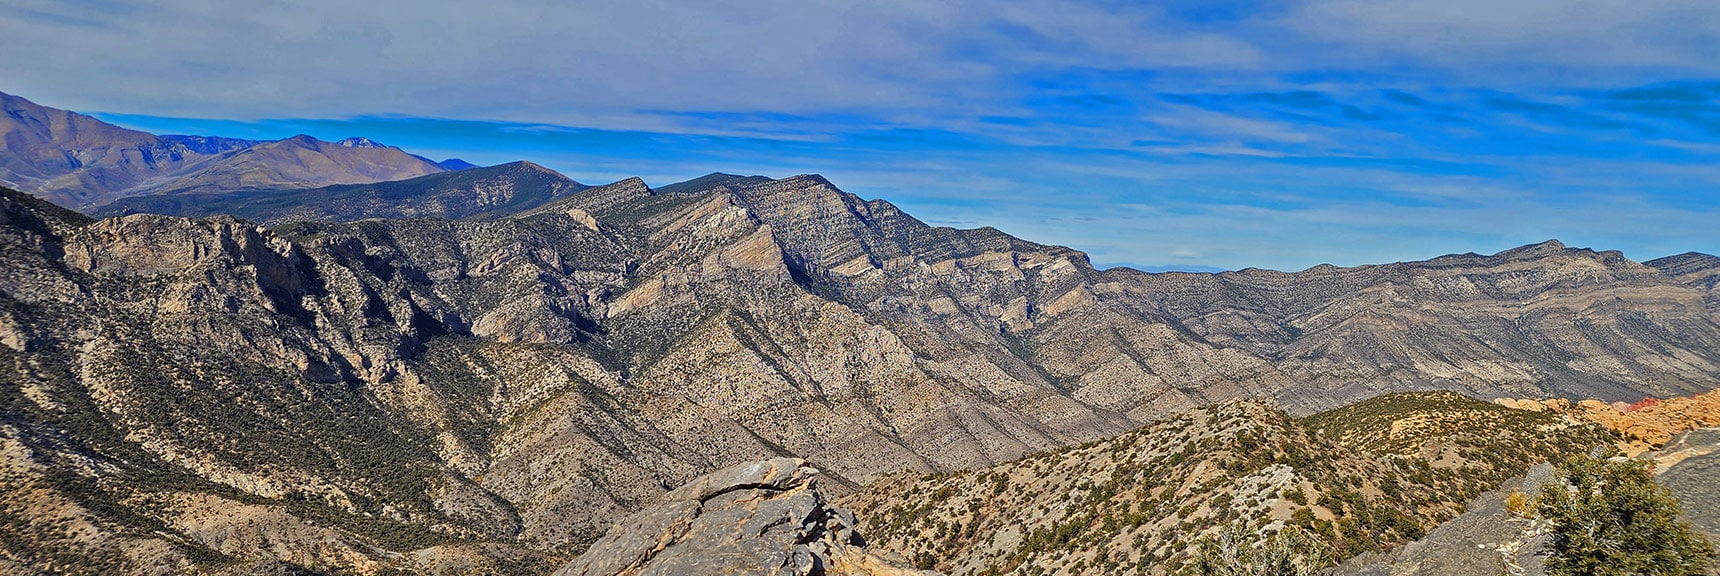 Keystone Thrust Stretching North View from North Peak | North Upper Crest Ridgeline | Rainbow Mountain Wilderness, Nevada